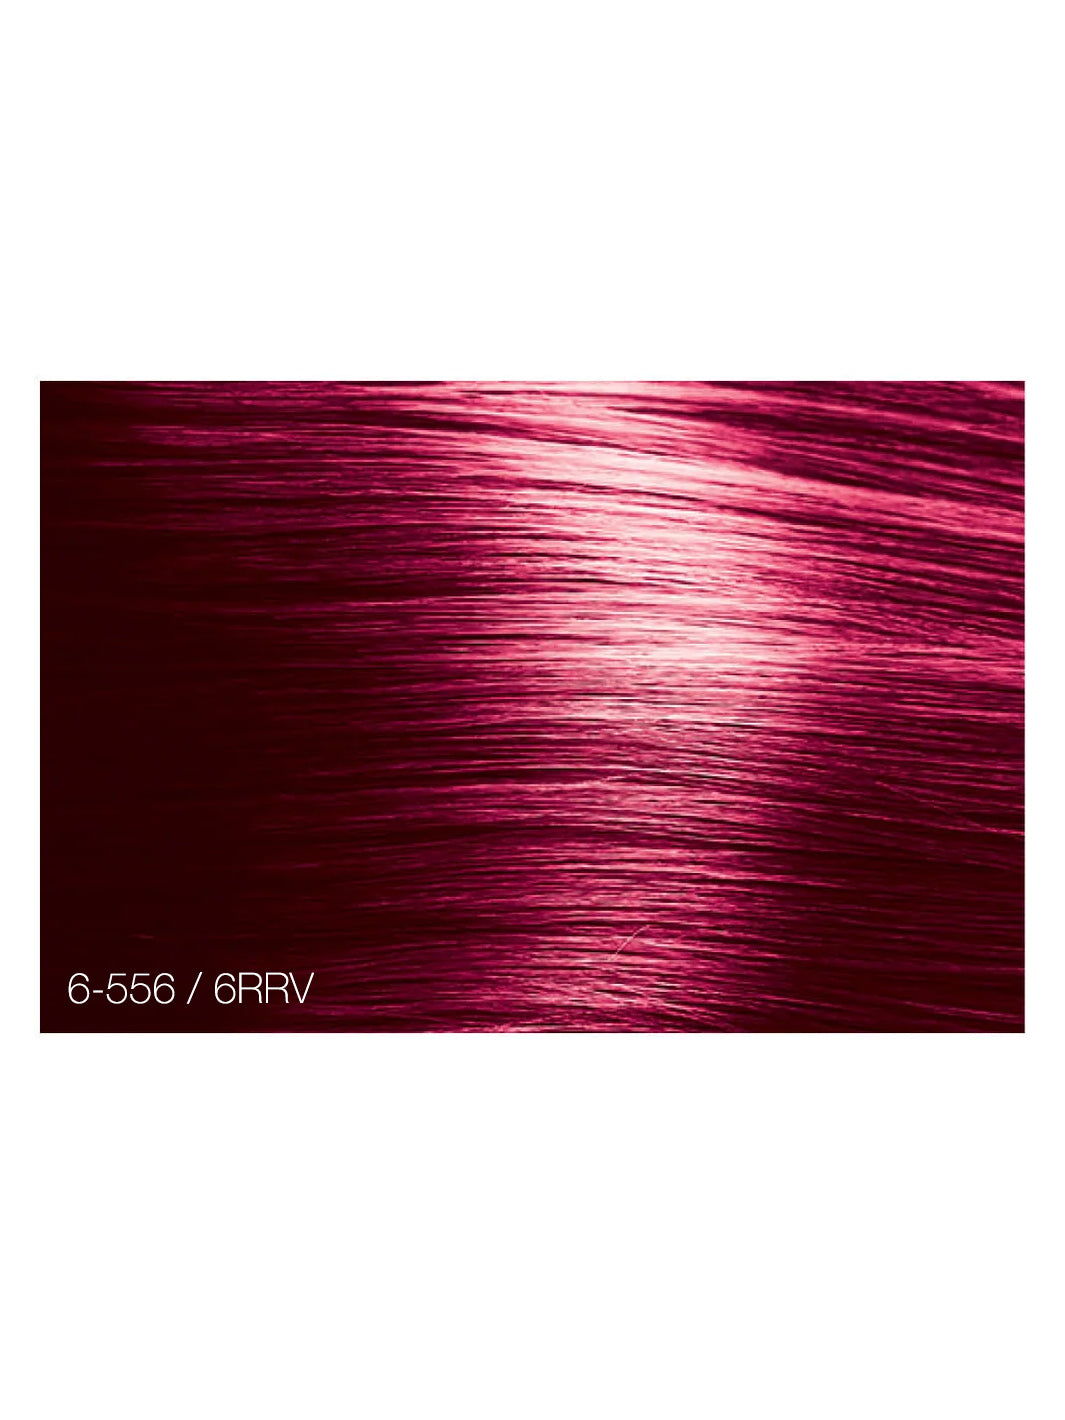 Oligo Calura Perm Red Violet Luxuriant -556/RRV